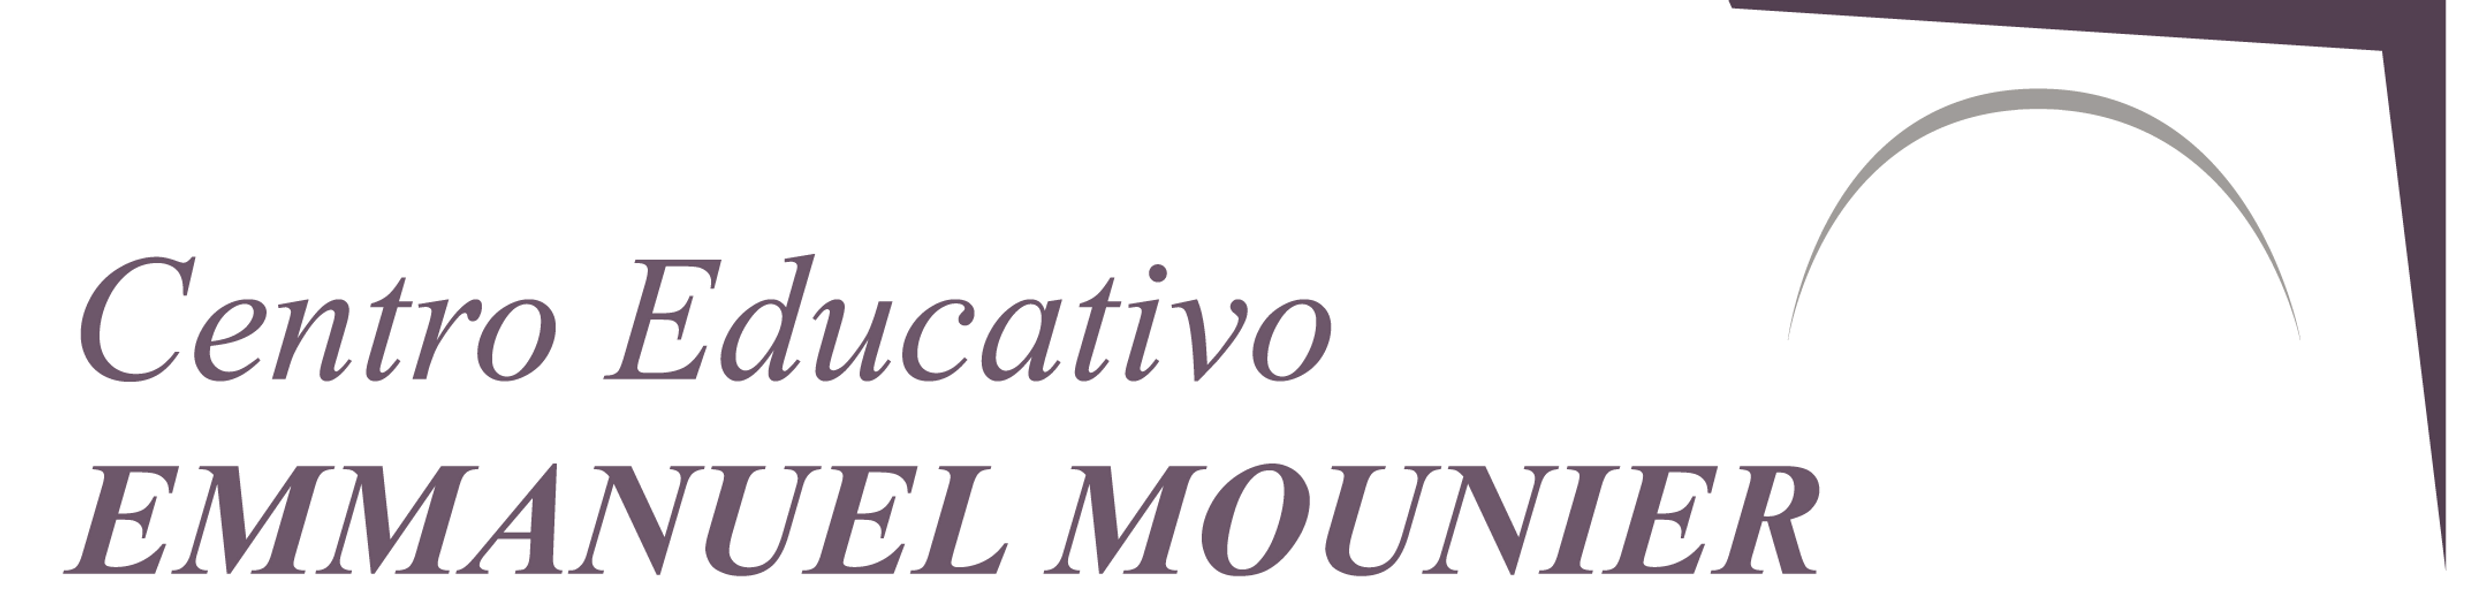 centro educativo emmanuel mounier logo